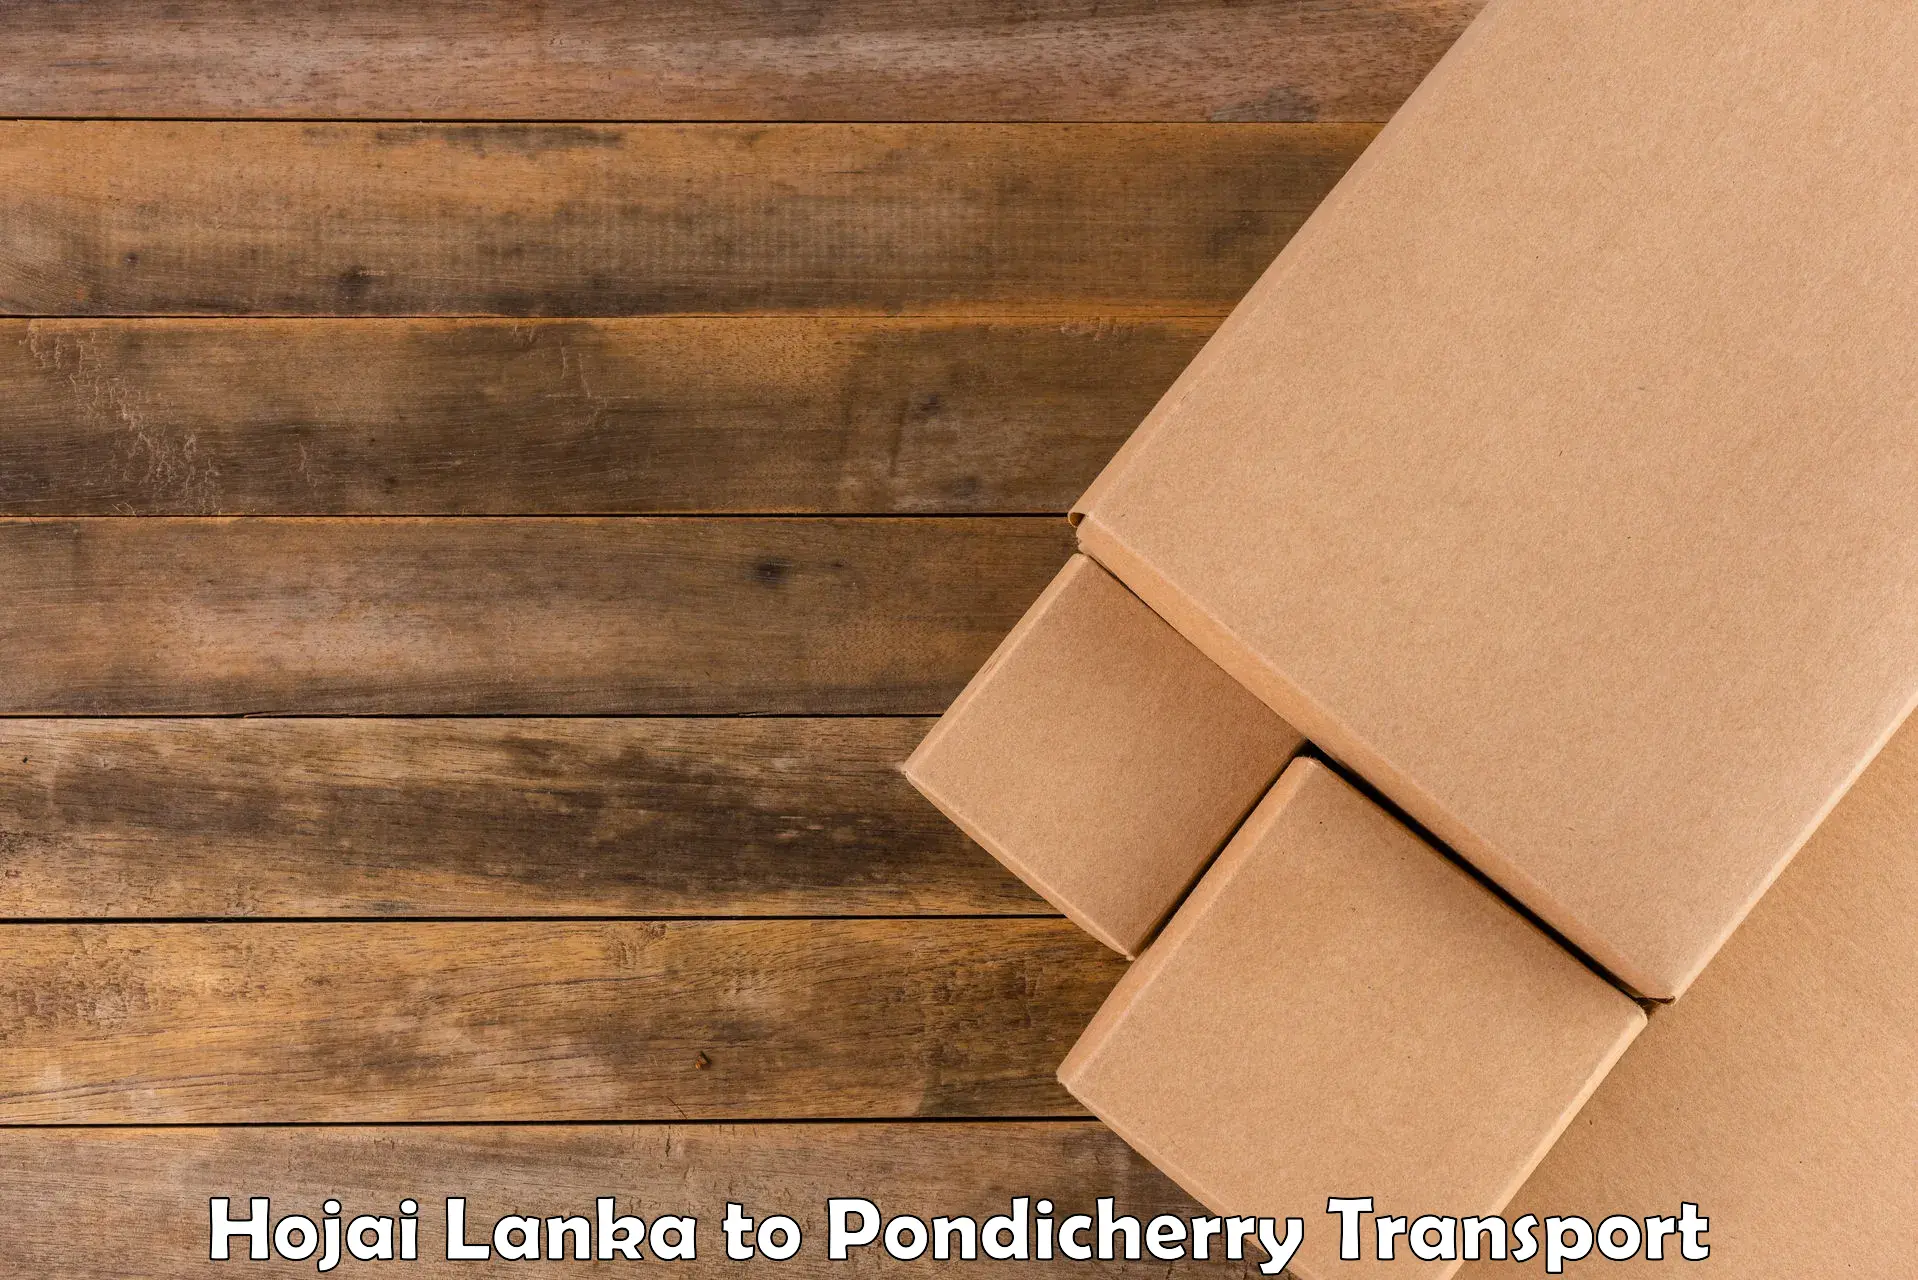 Two wheeler transport services Hojai Lanka to Pondicherry